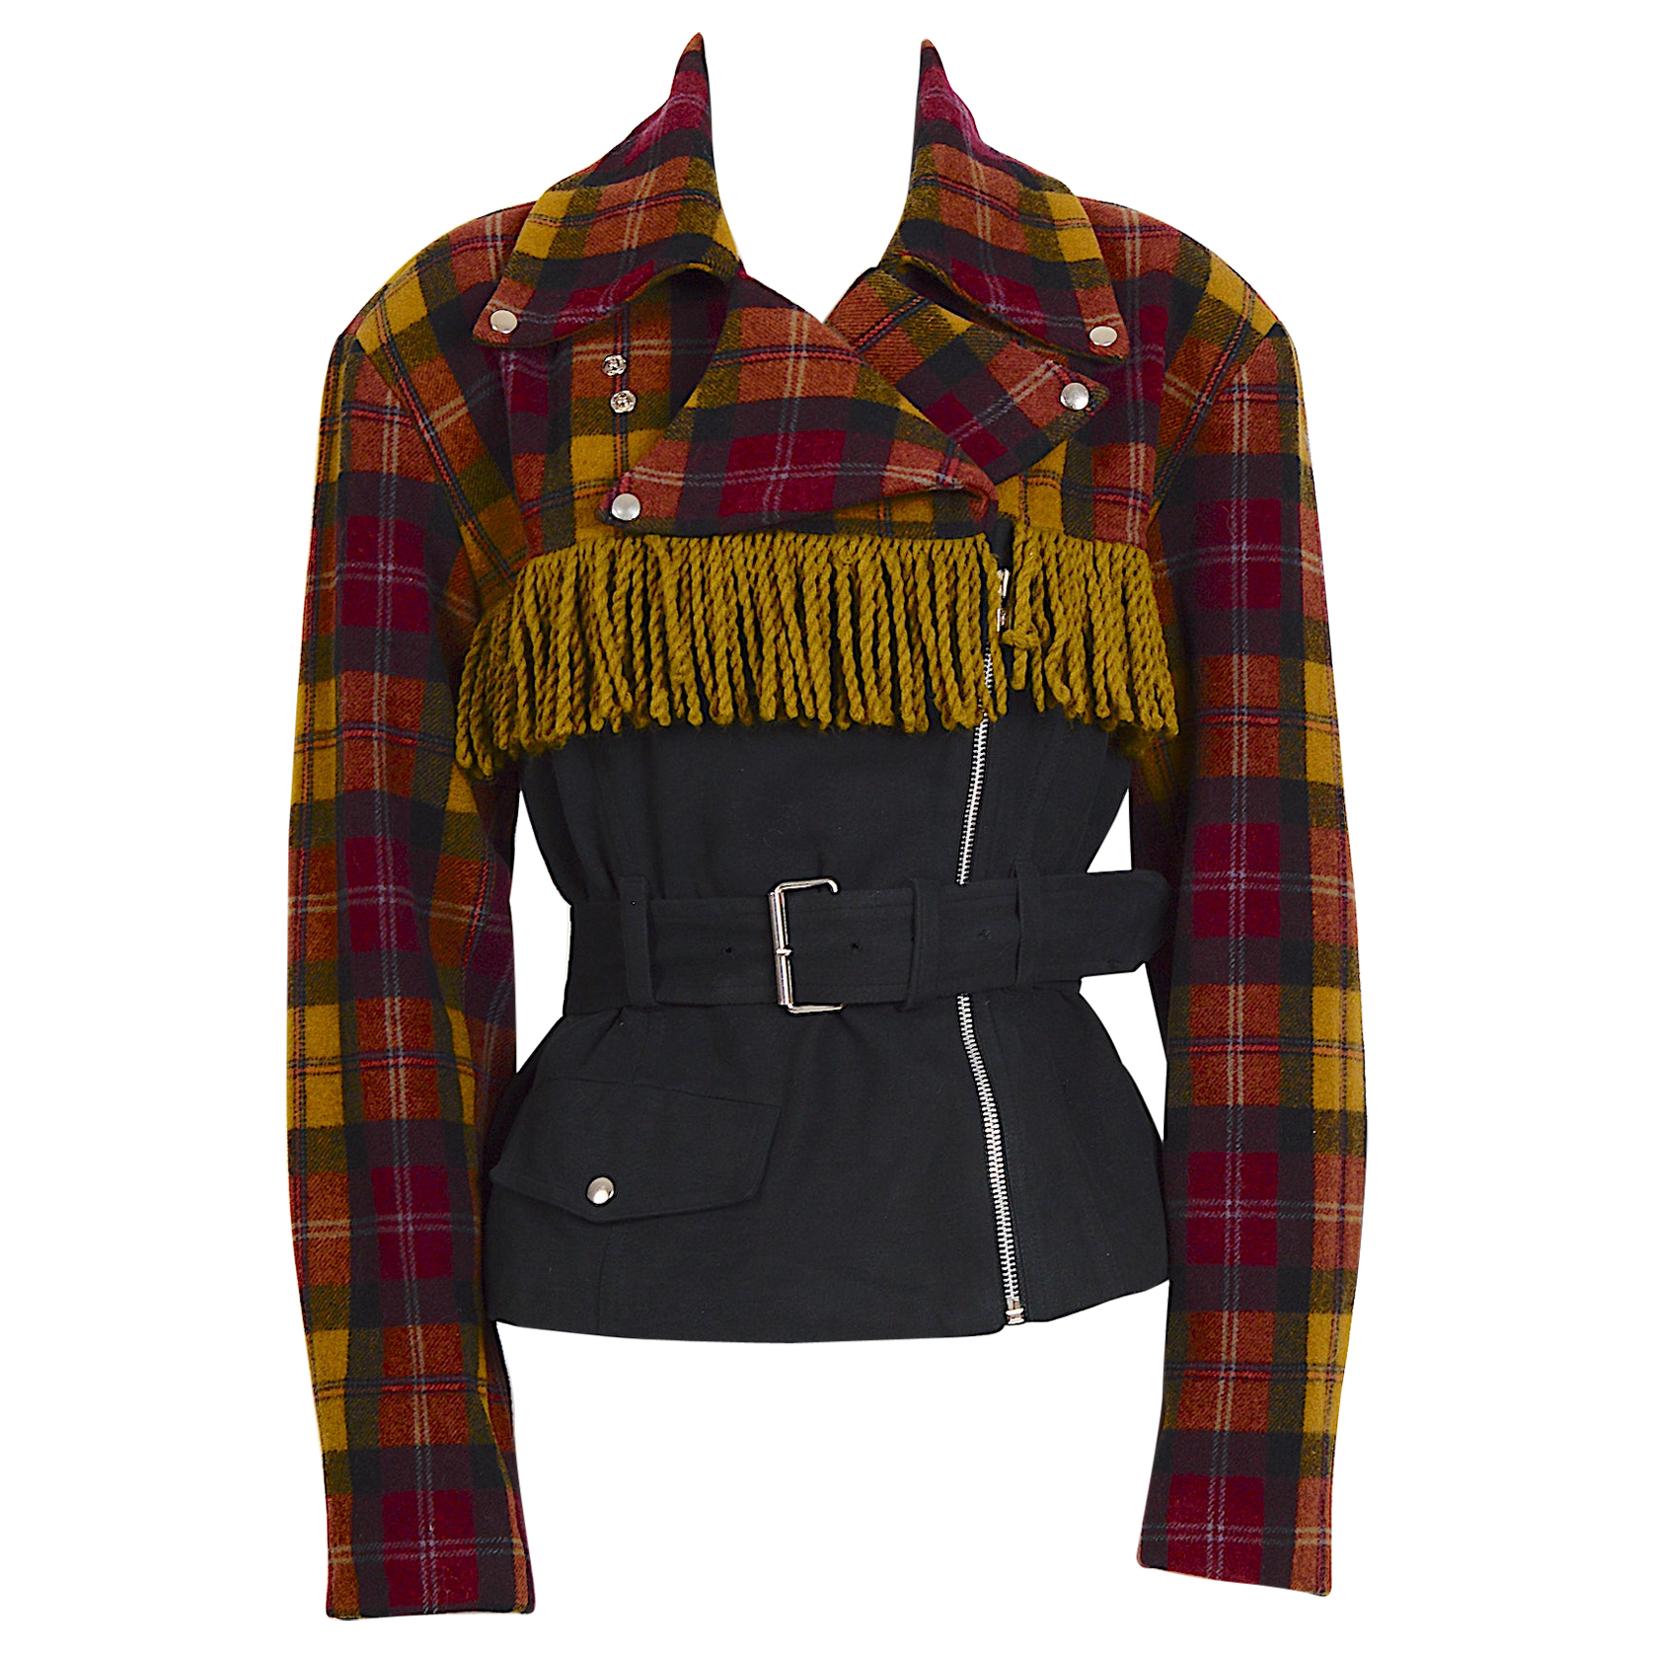 Plein Sud 1980s vintage wool fringed short belted jacket